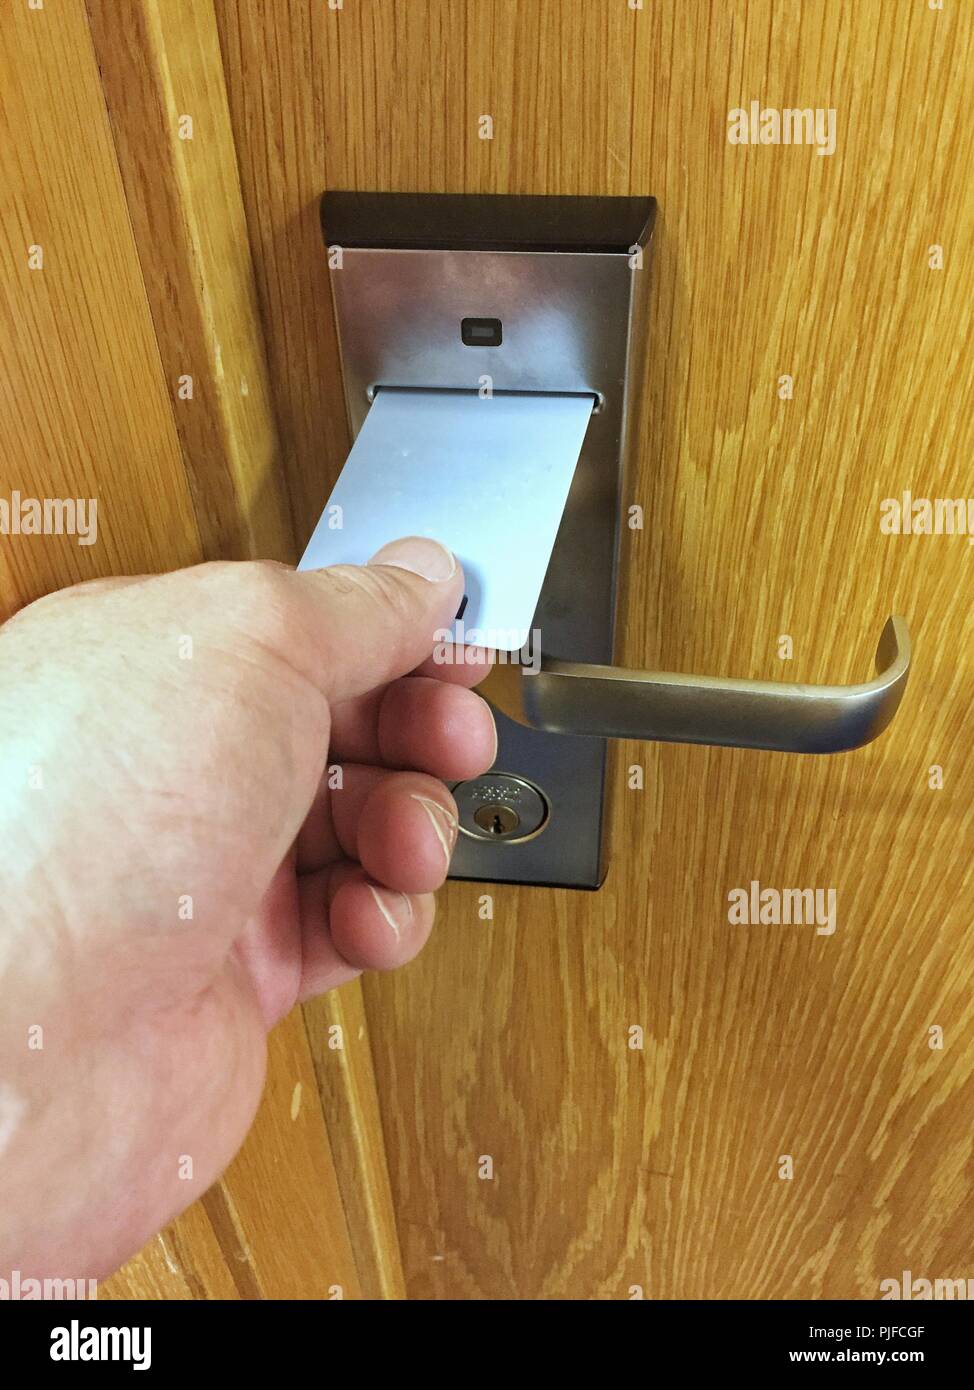 Un POV d'une main humaine à l'aide d'un hôtel ou motel carte clé dans une serrure de porte de chambre Banque D'Images